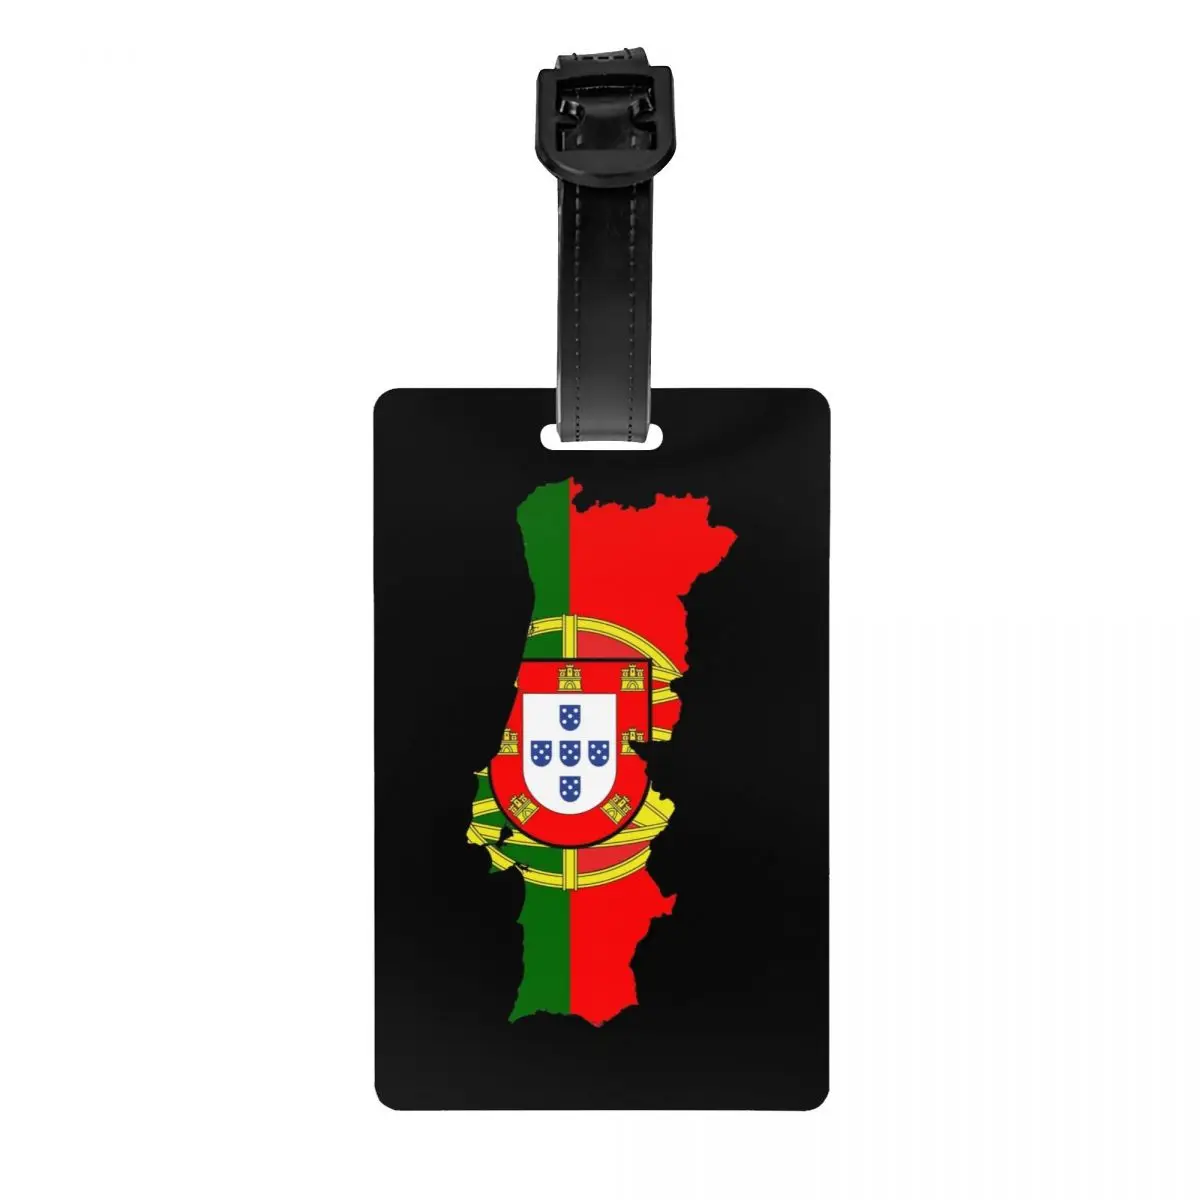 

Пользовательский флаг Португалии, карта, бирка для багажа, защита конфиденциальности, багажные бирки Португальской Республики, этикетки для дорожных сумок, чемоданов